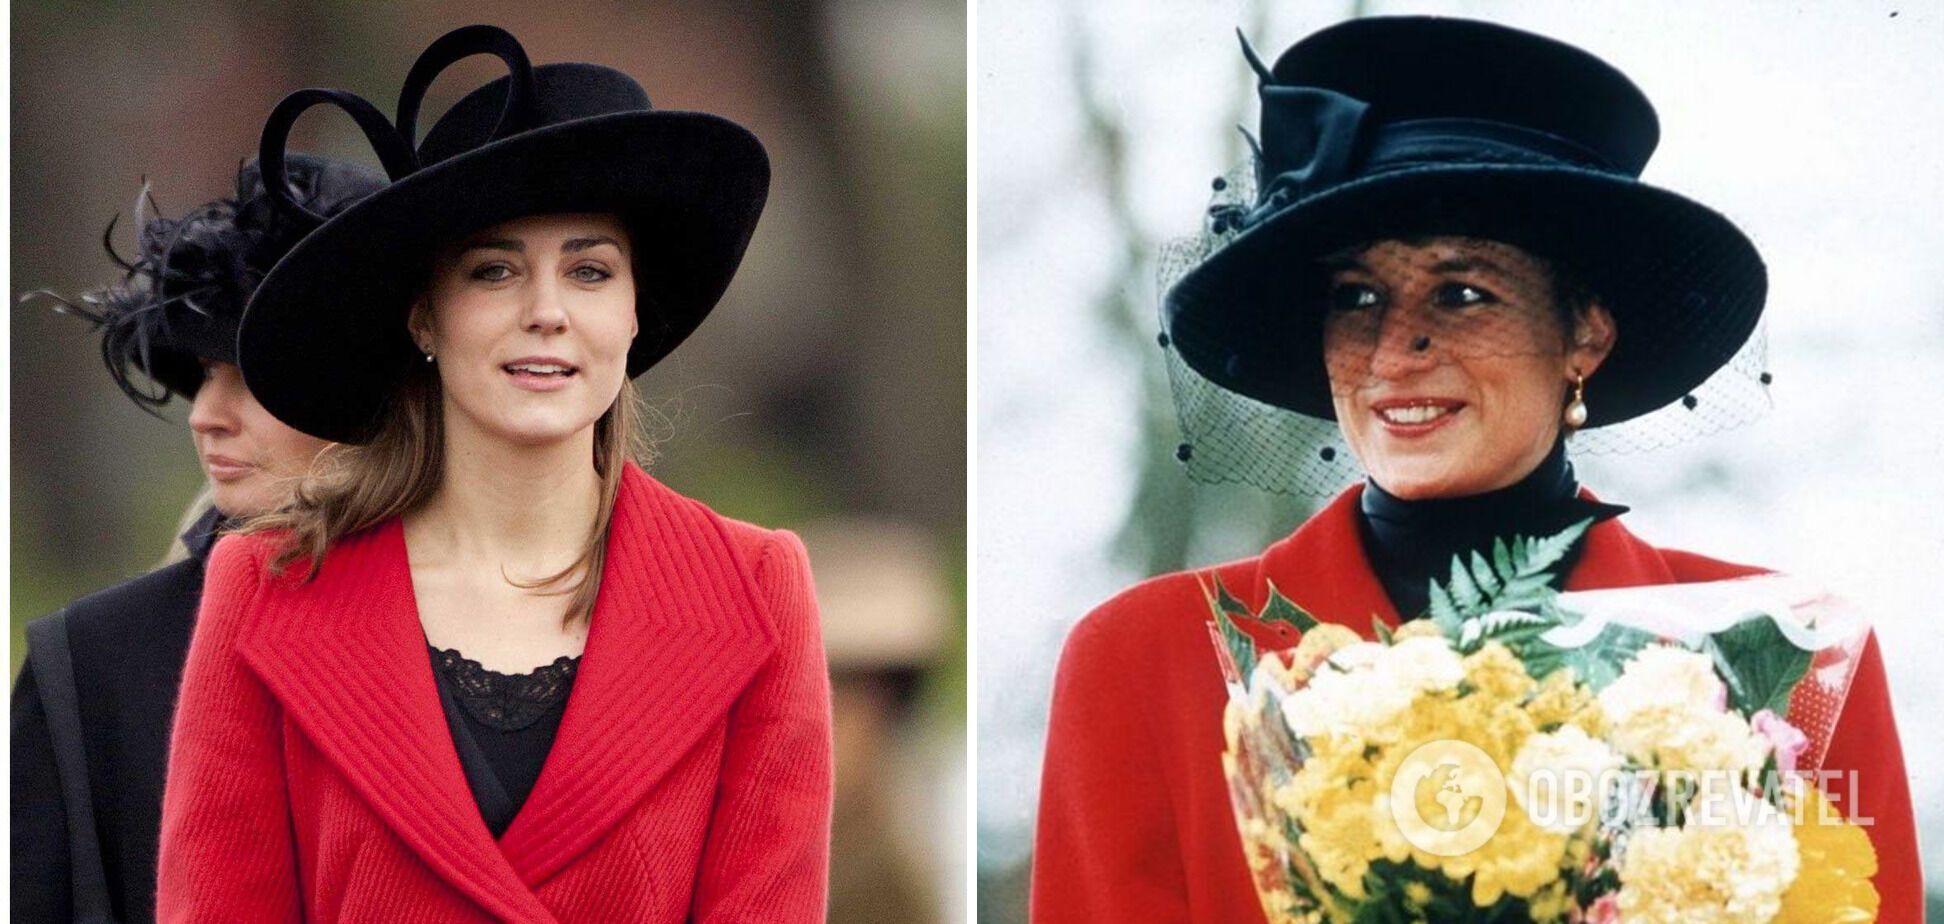 Кейт Миддлтон и принцесса Диана обожали надевать красное пальто.